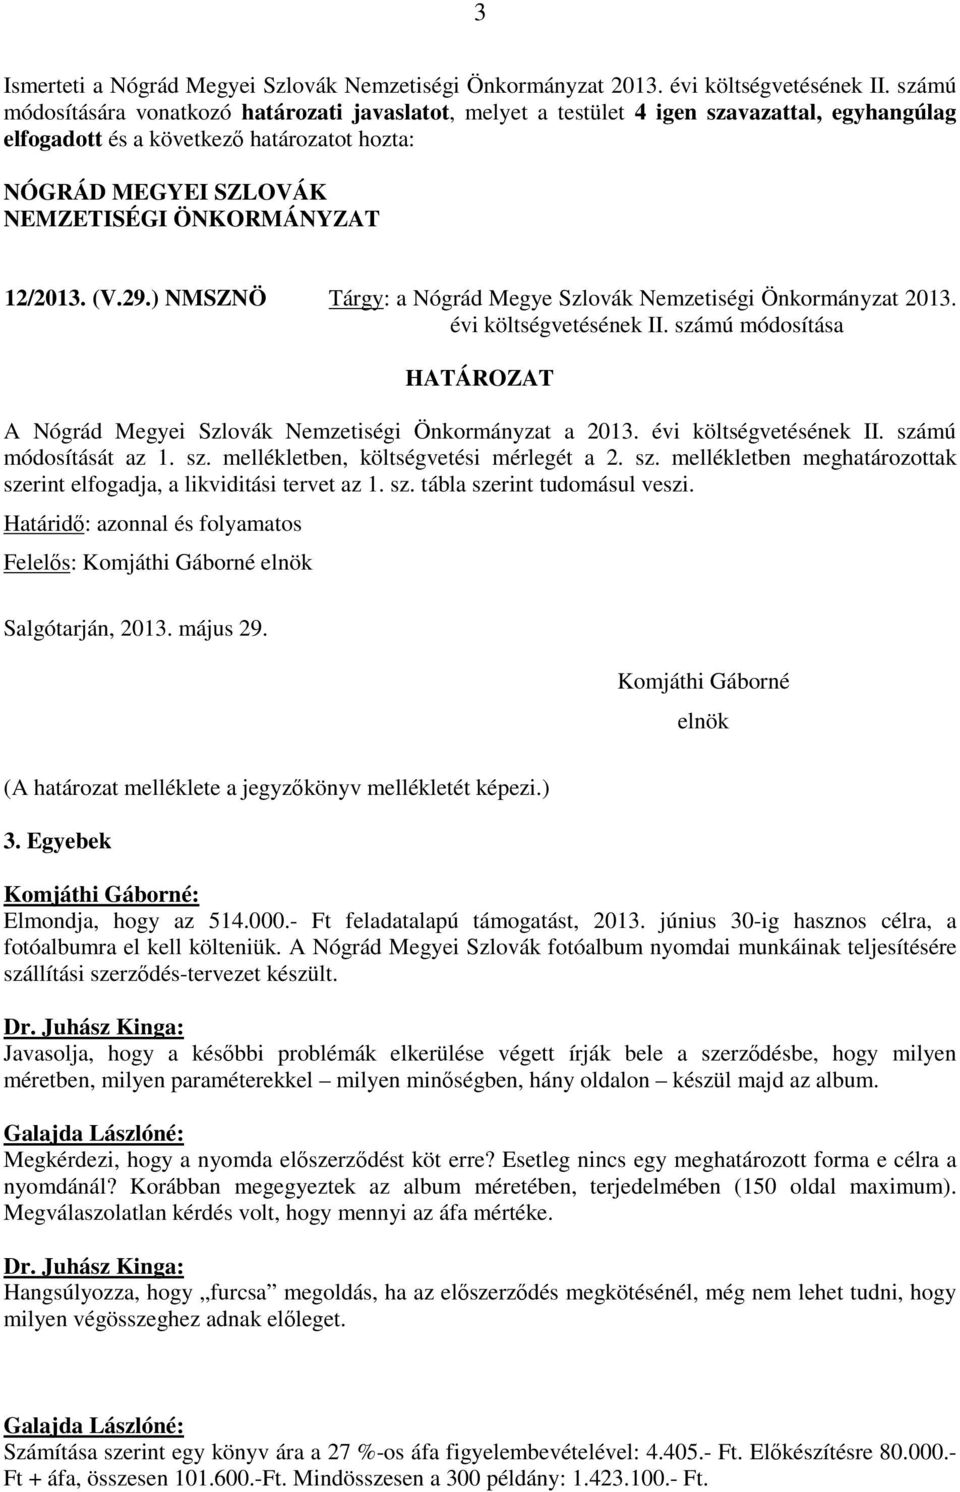 12/2013. (V.29.) NMSZNÖ Tárgy: a Nógrád Megye Szlovák Nemzetiségi Önkormányzat 2013. évi költségvetésének II. számú módosítása HATÁROZAT A Nógrád Megyei Szlovák Nemzetiségi Önkormányzat a 2013.